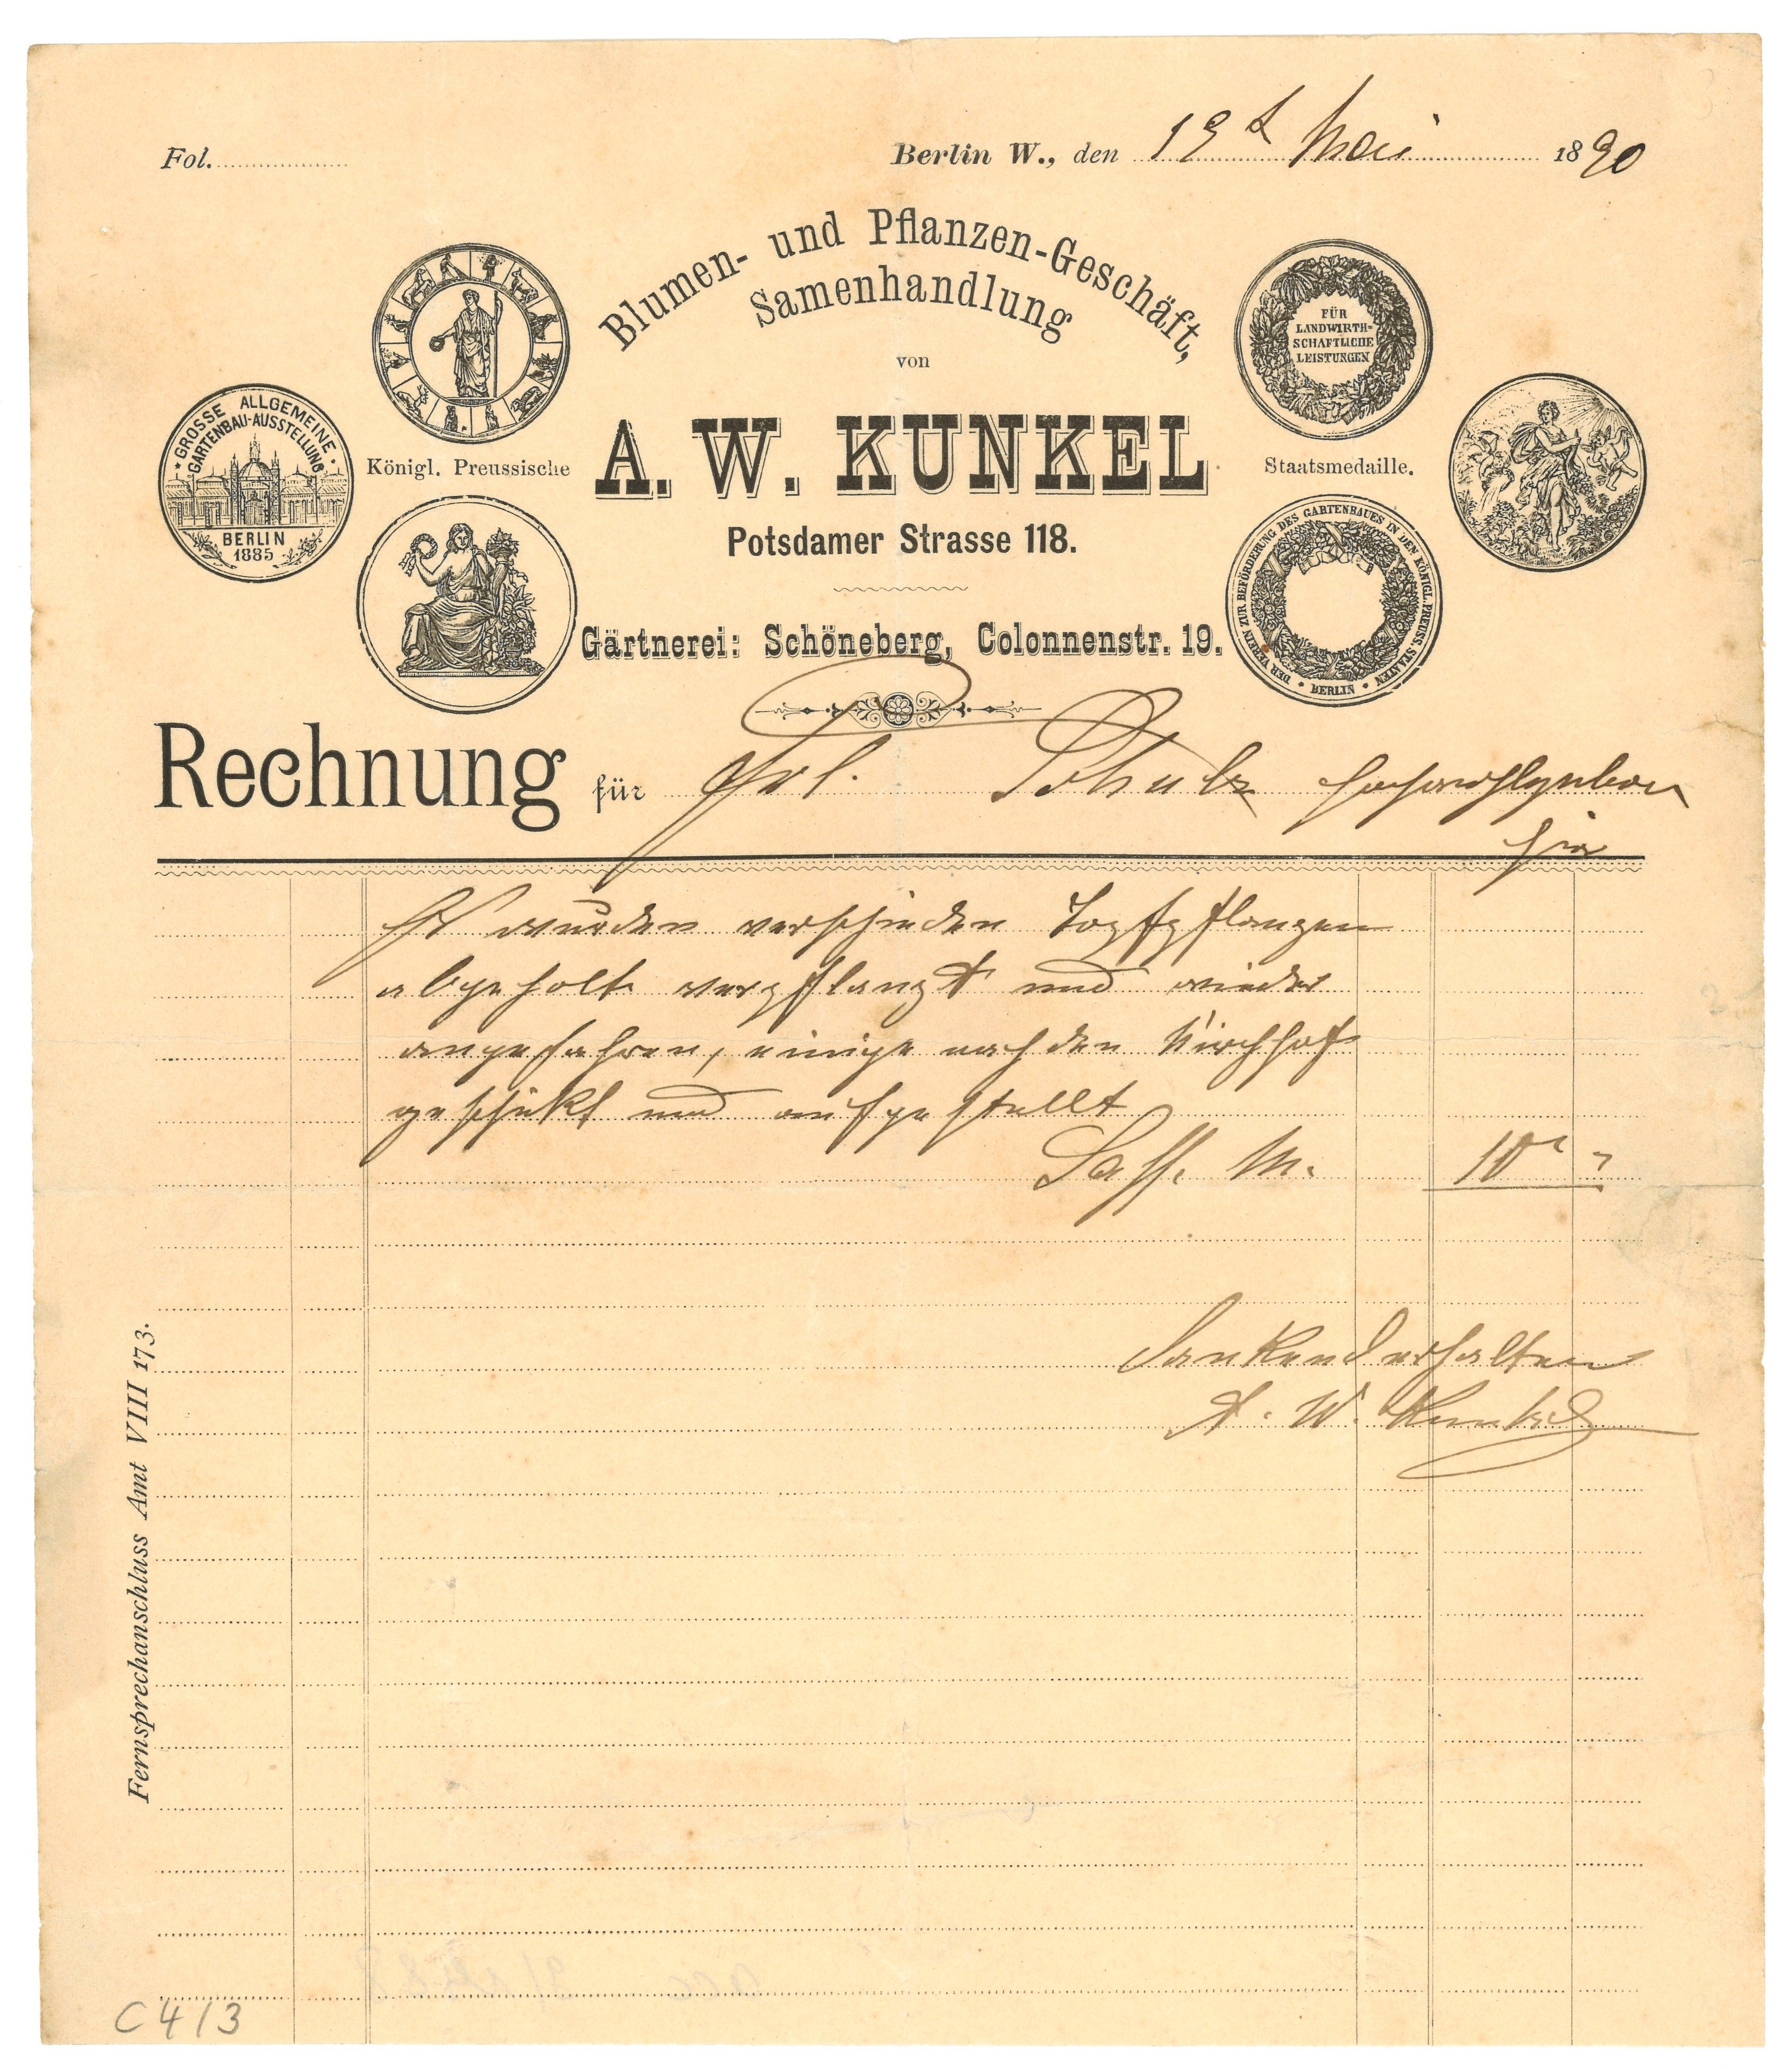 Rechnung der Blumen- und Pflanzenhandlung A. W. Kunkel in Berlin 1890 (Landesgeschichtliche Vereinigung für die Mark Brandenburg e.V., Archiv CC BY)